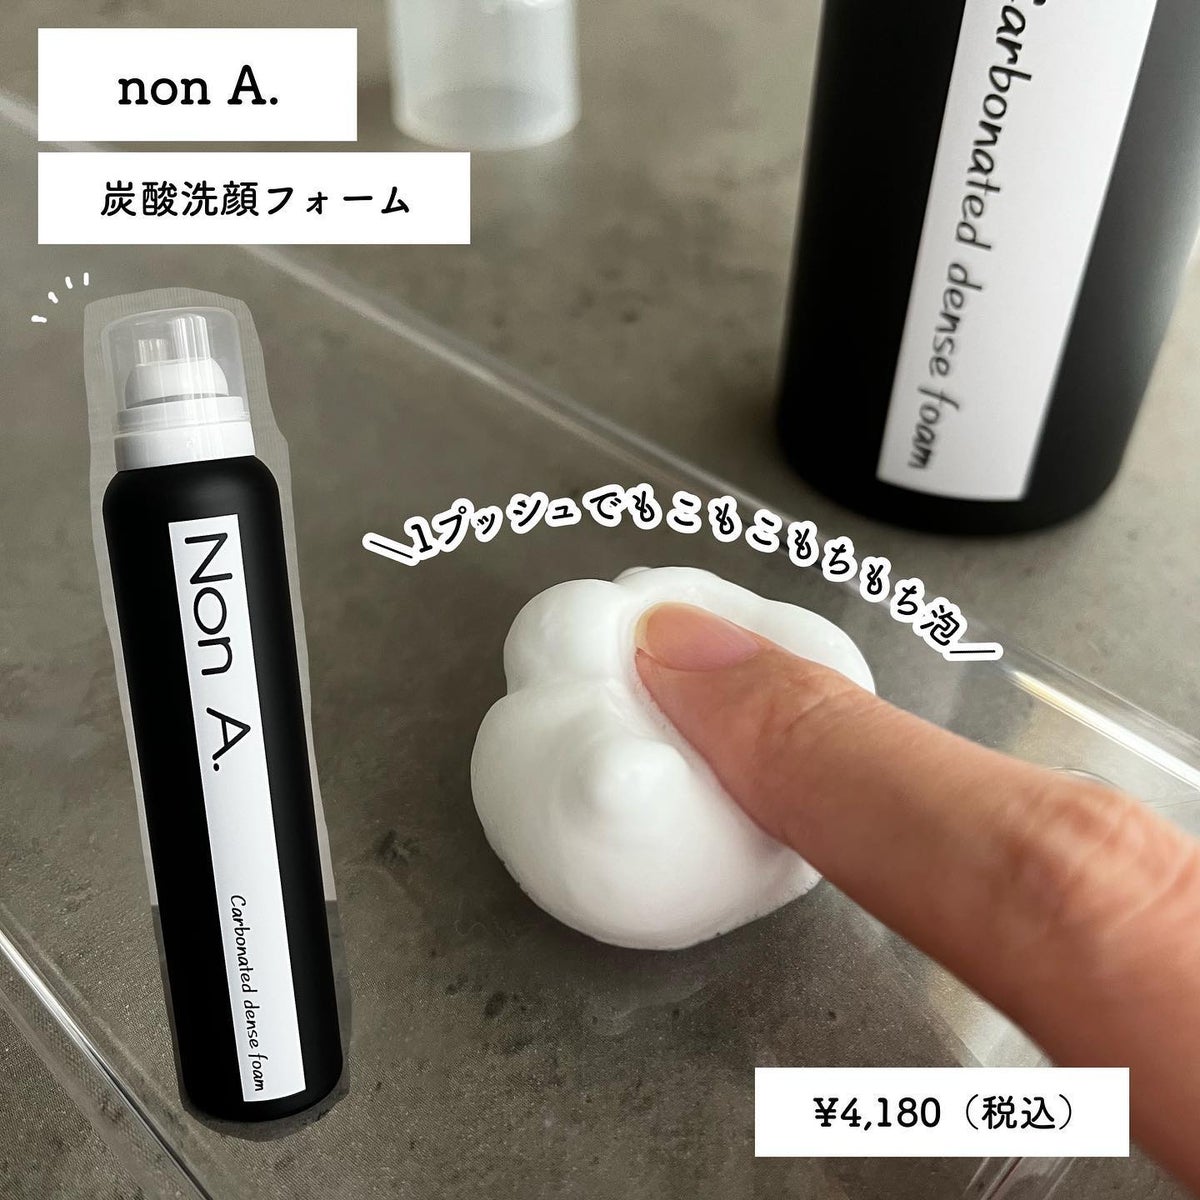 NonA 炭酸洗顔フォーム - 洗顔料